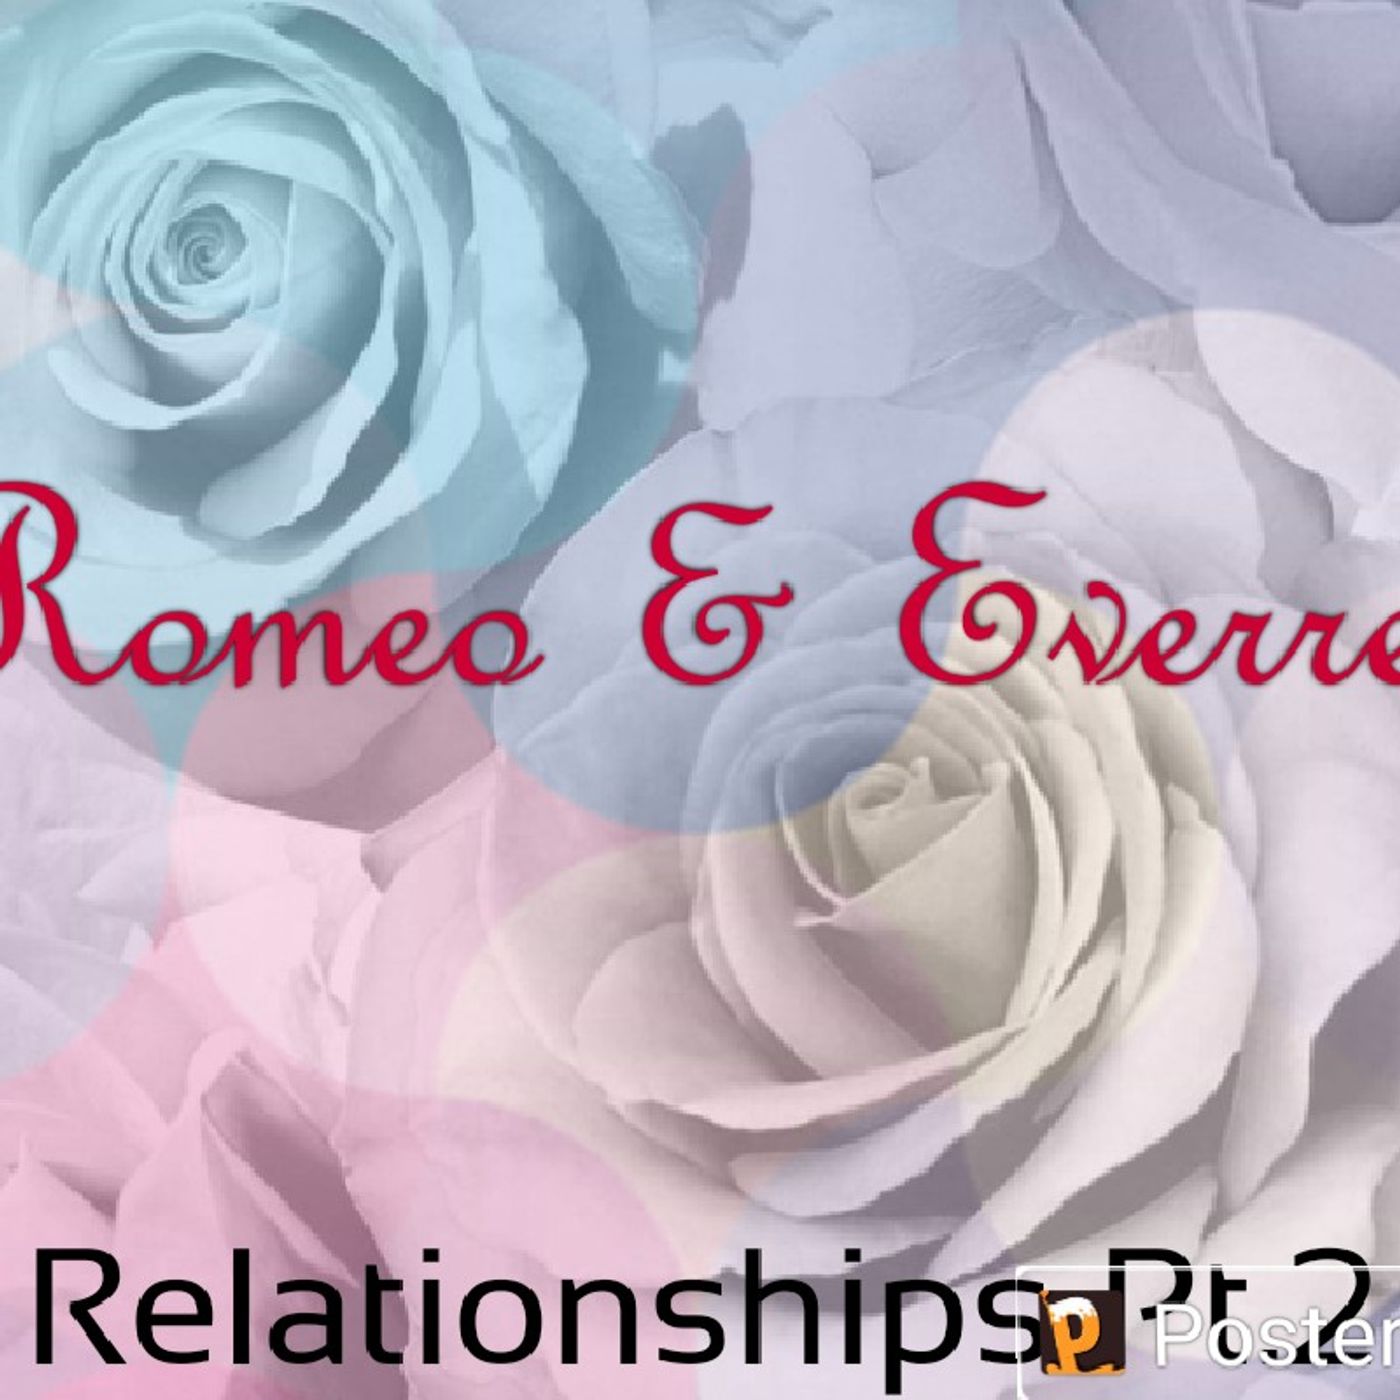 Episode 8 - Romeo & Everret